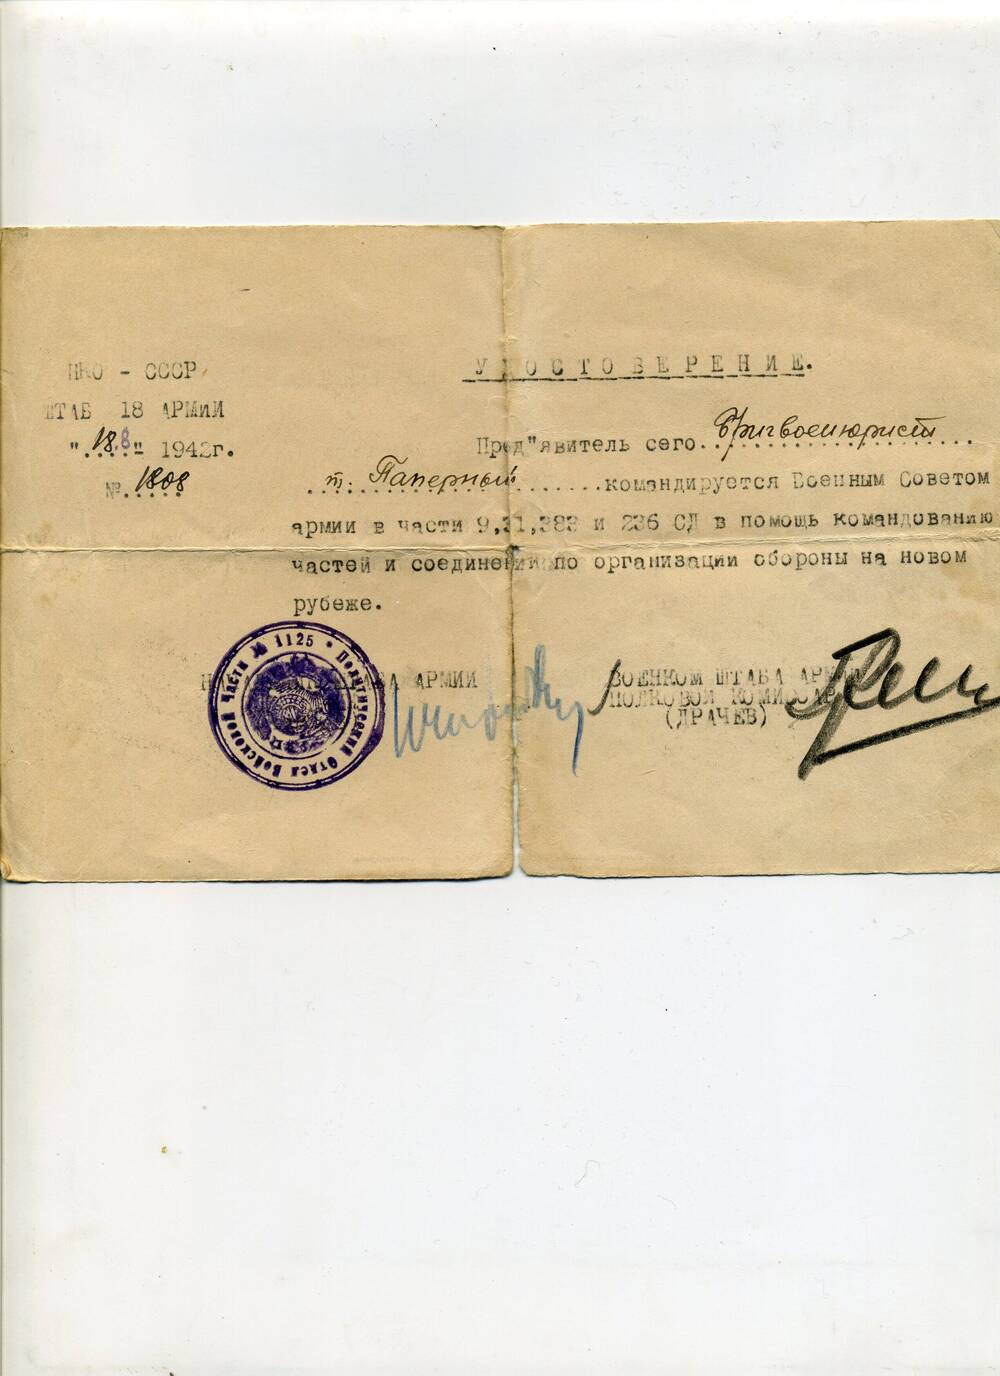 Удостоверение бригвоенюриста т. Паперно в том, что он командируется Военным Советом 18 Армии в части 9, 31, 383 и 236 СД в помощь командованию. 18 августа 1942 г. Подл.